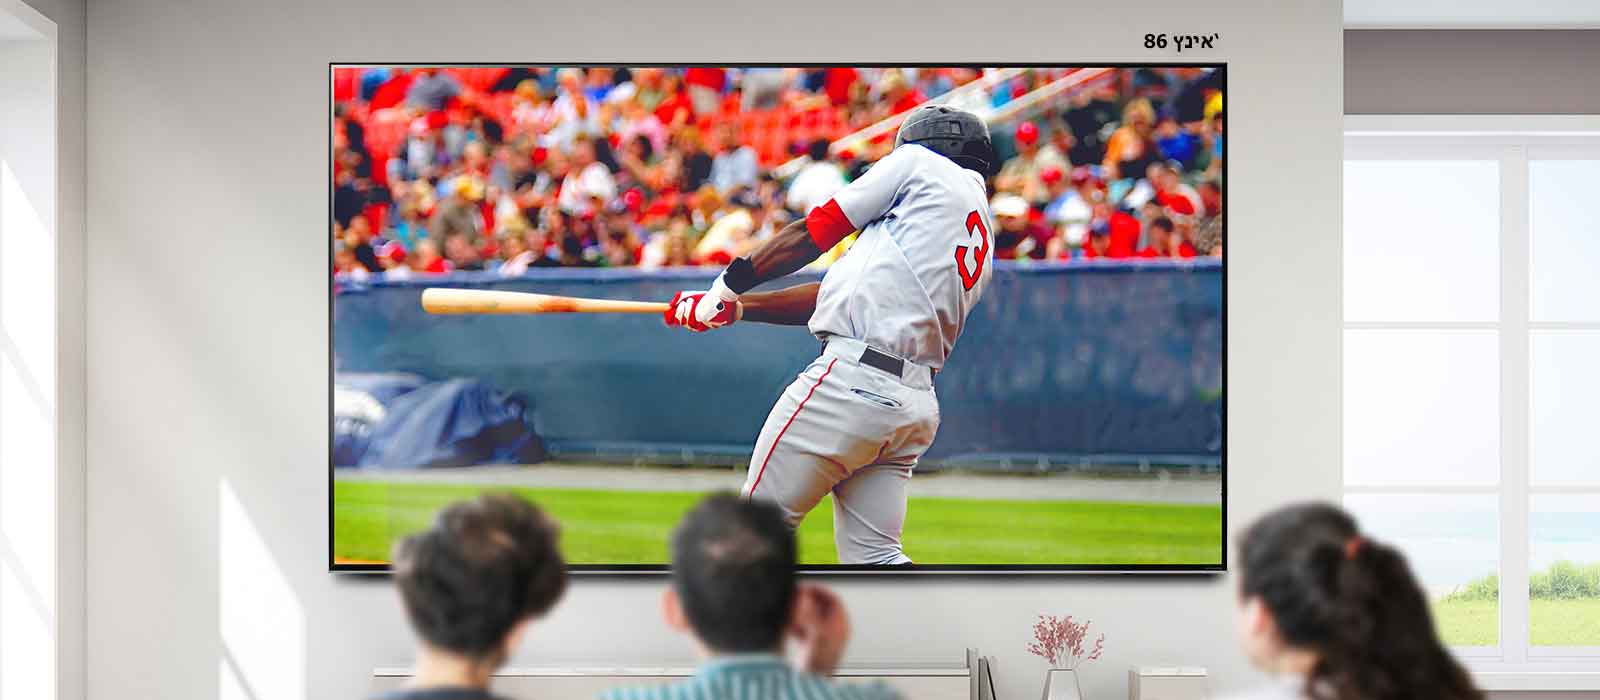 תמונה הניתנת לגלילה של שלושה אנשים הצופים במשחק בייסבול בטלוויזיה גדולה תלויה על קיר. עם הגלילה משמאל לימין, המסך גדל.